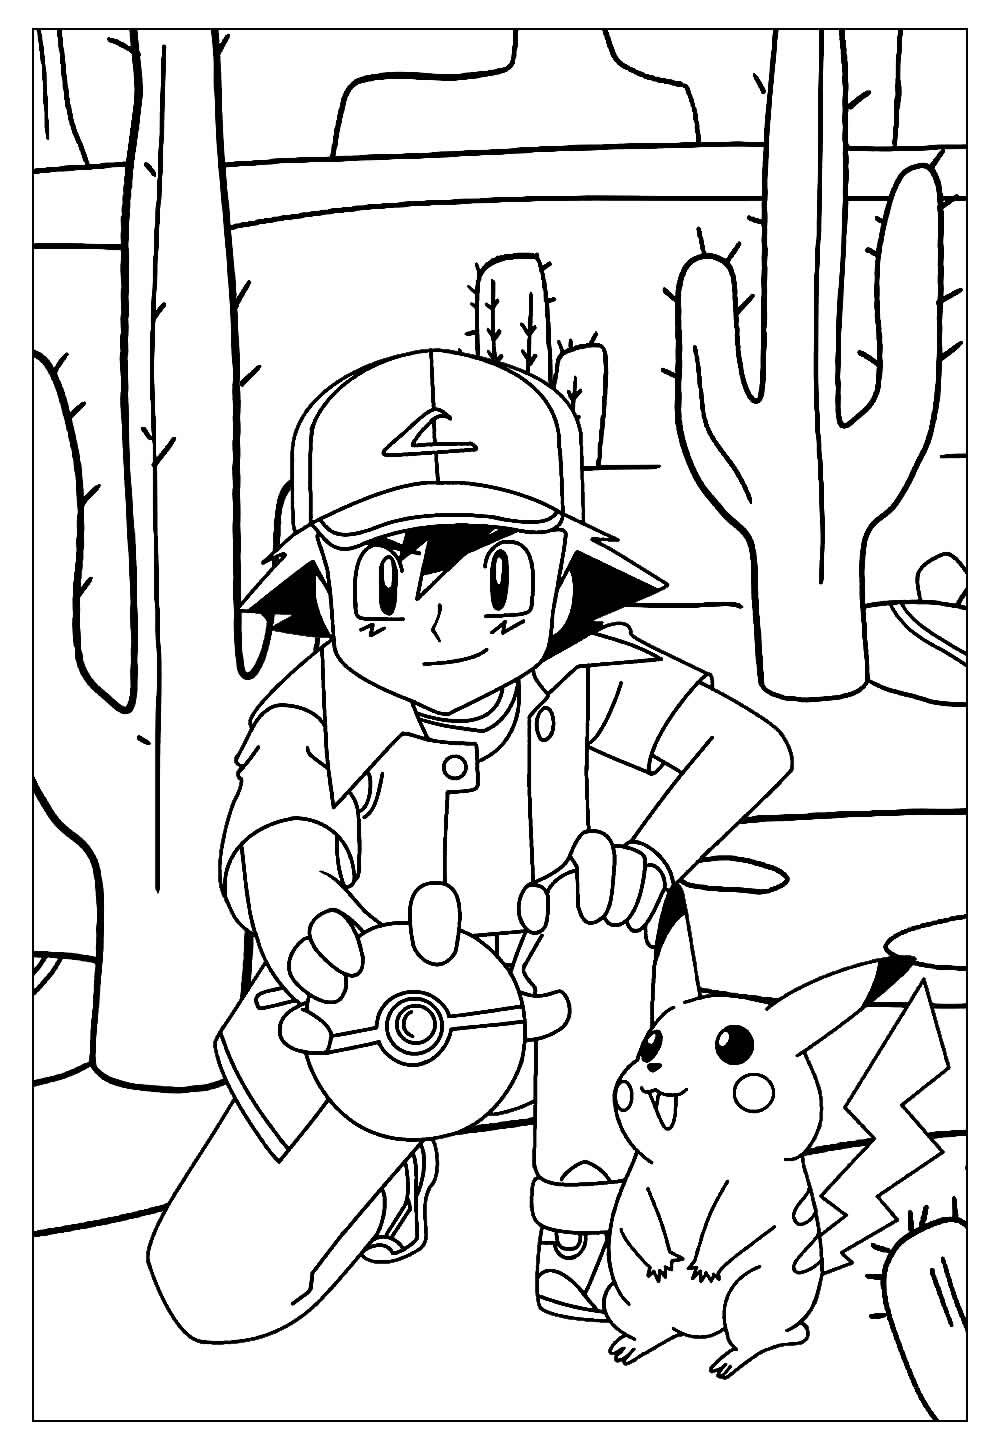 Desenhos do Pikachu para imprimir e colorir - Página 2 de 2 - Blog